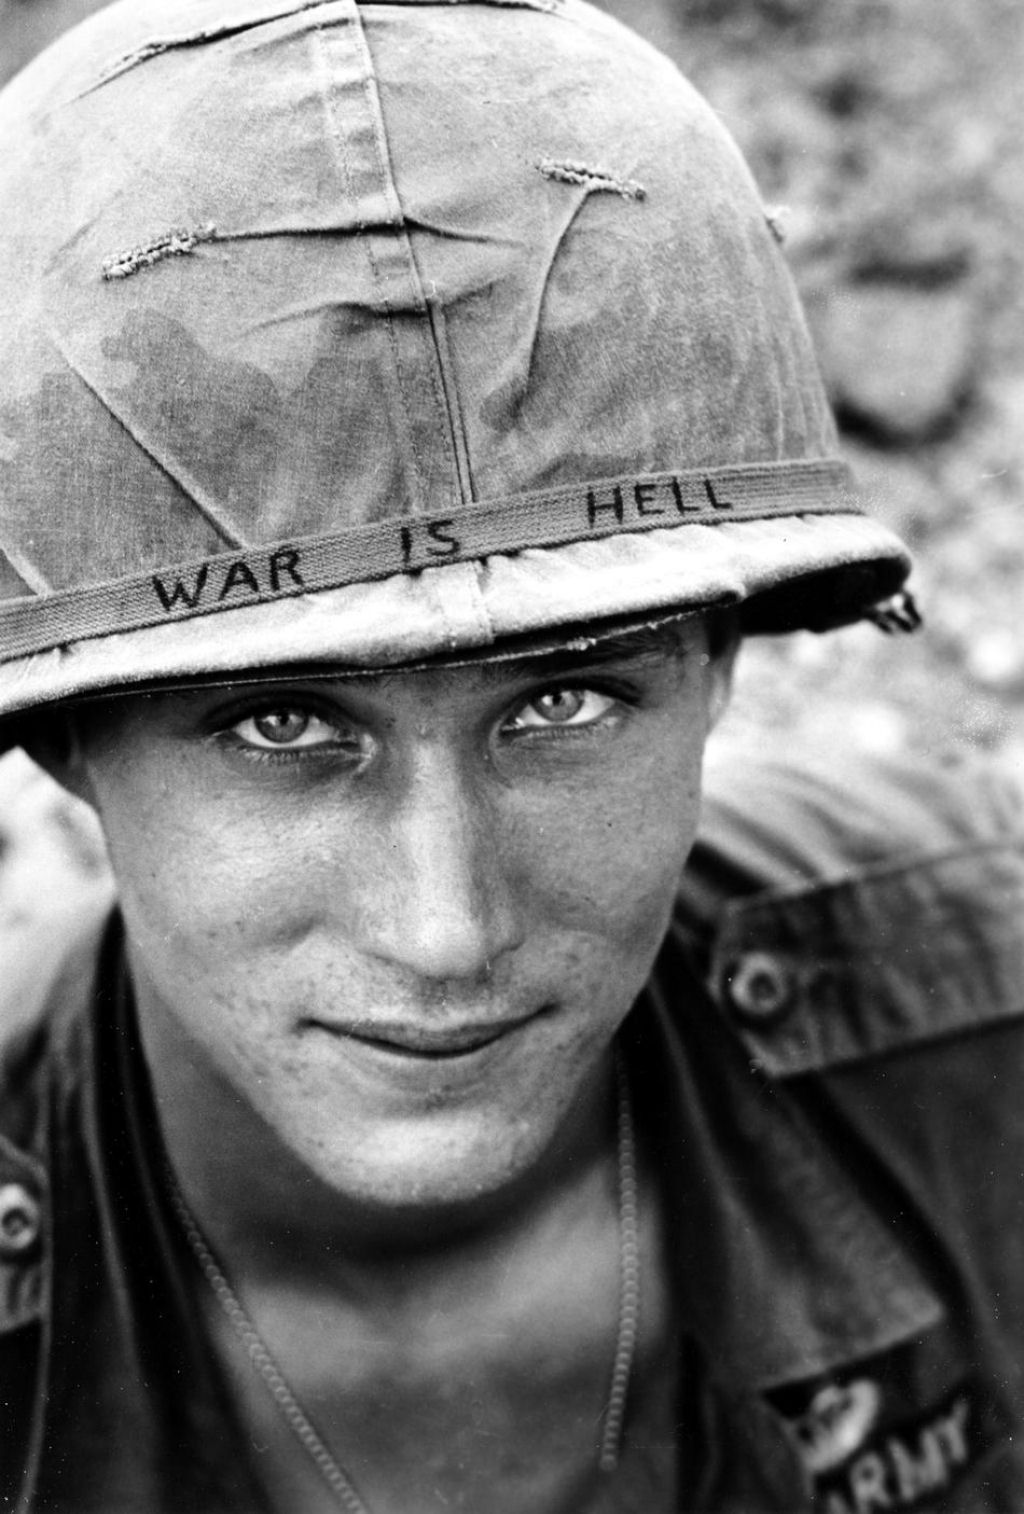 6. Unknown Soldier in Vietnam, 1965